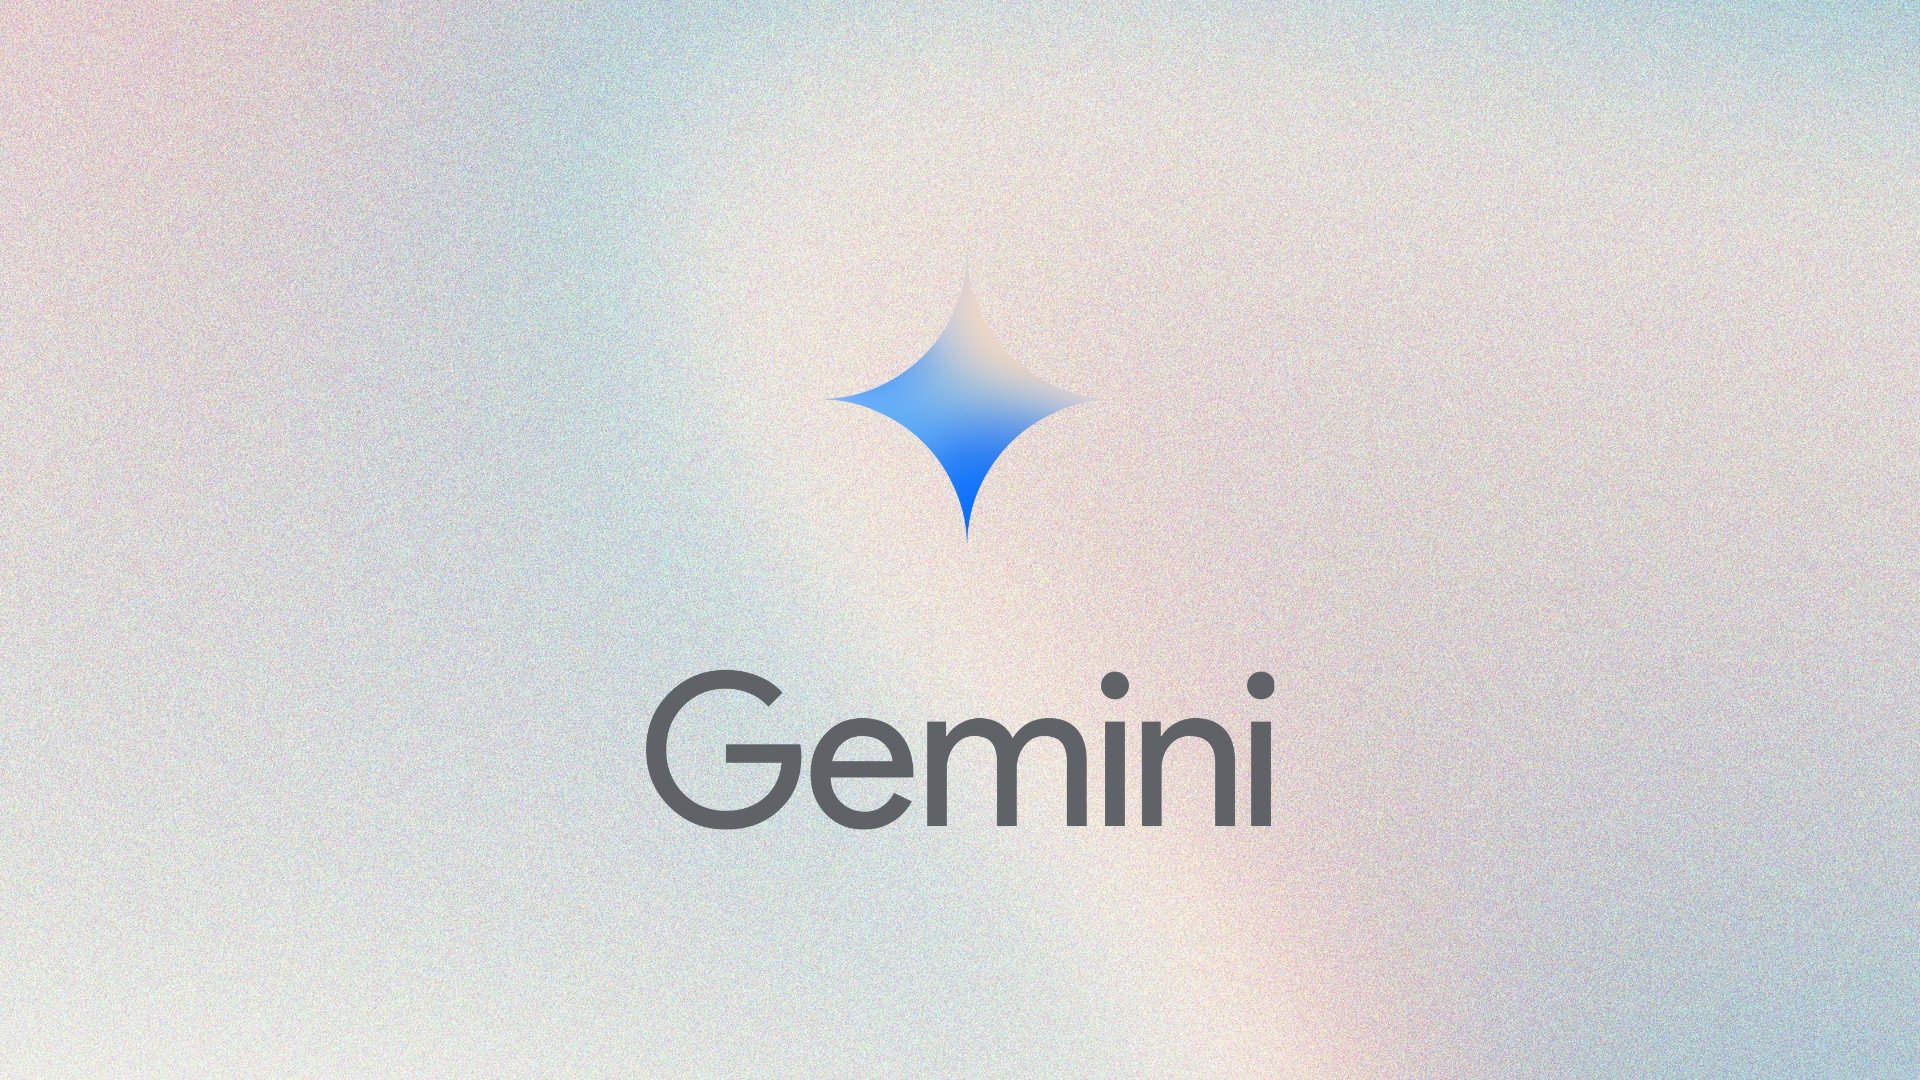 Gemini começa a receber integração às Mensagens da Google